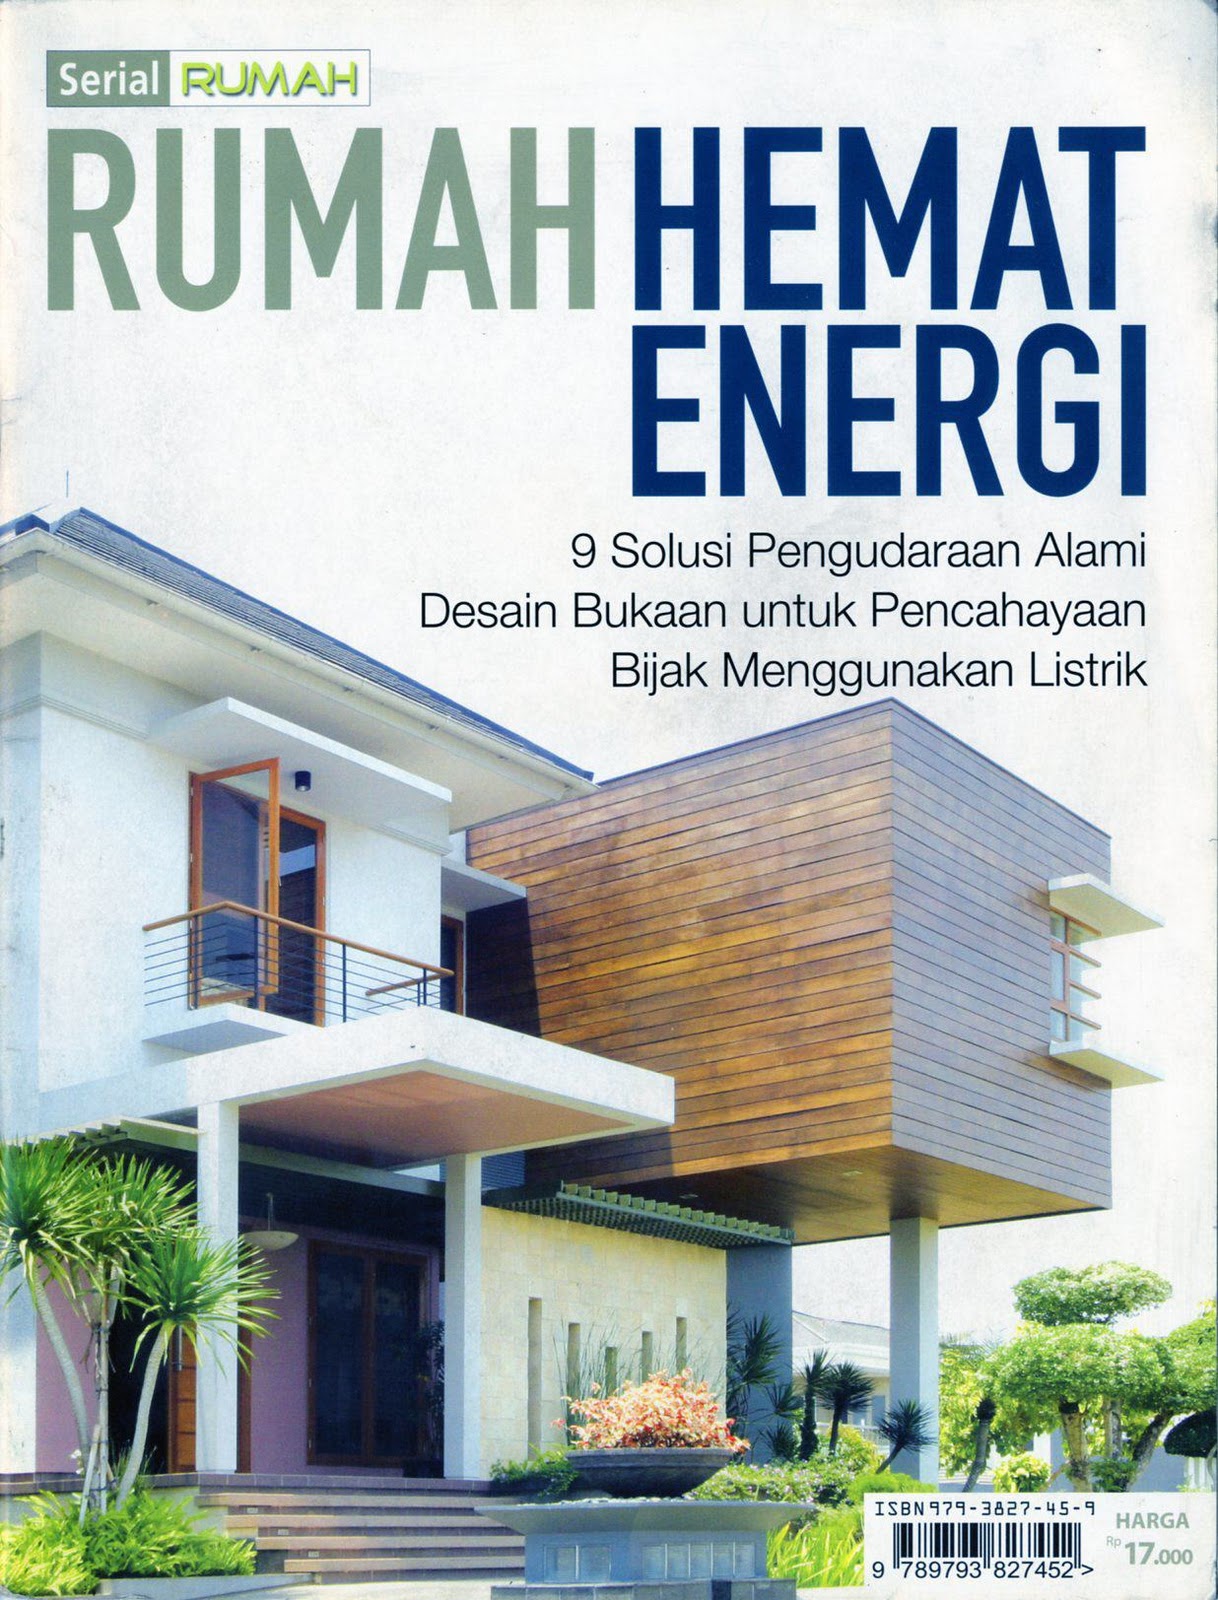 Buku Murah Meriah SOLD OUT Serial Rumah Rumah Hemat Energi